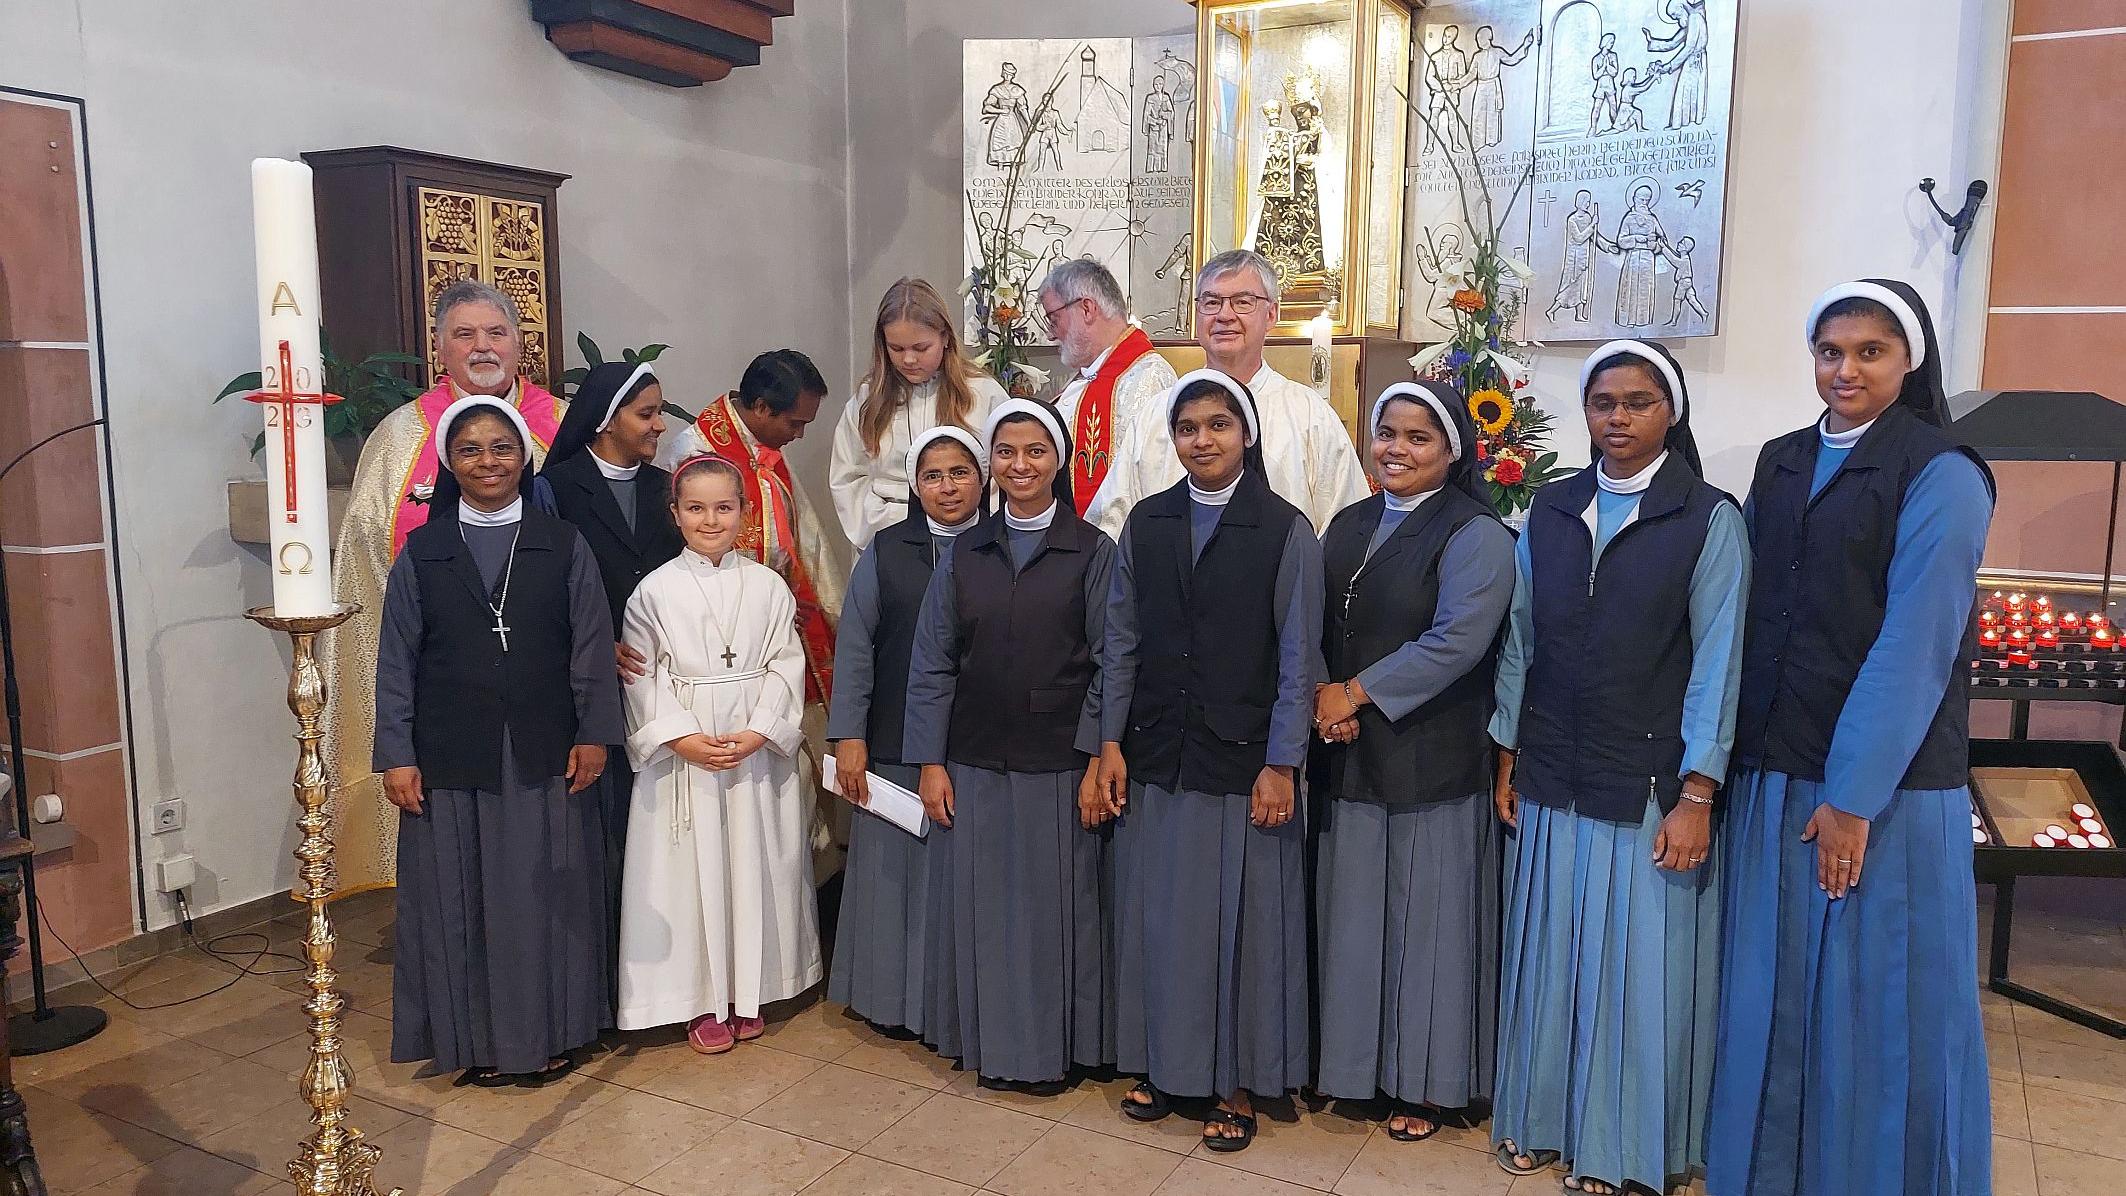 Einen der Gottesdienste bei der Wallfahrt leitete der indische Kooperator – Ordensschwestern aus dem Land gestalteten ihn mit.